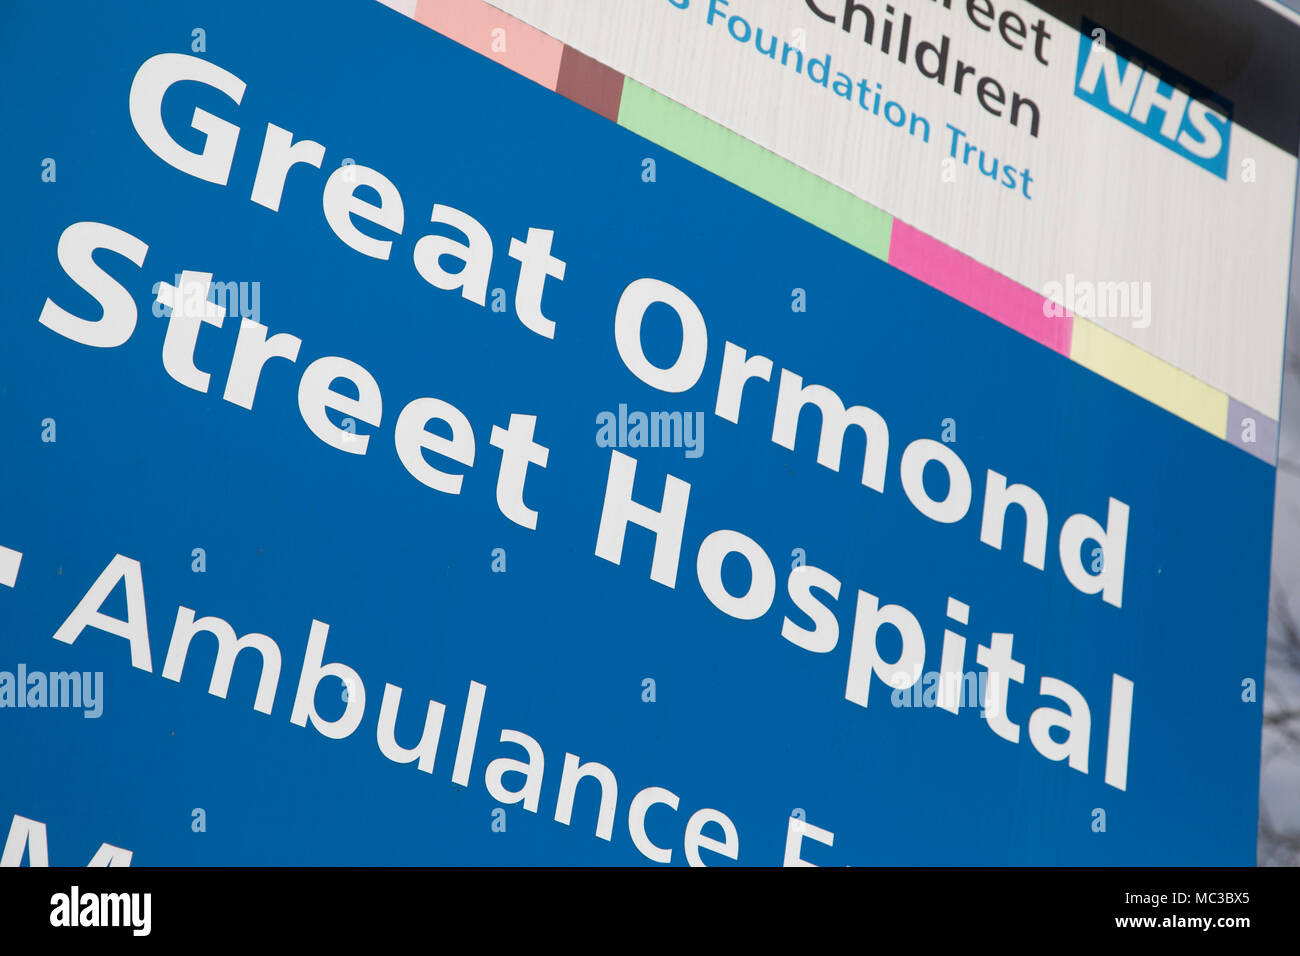 Great Ormond Street Childrens Hospital di Londra, Inghilterra, Regno Unito. Great Ormond Street Hospital è un ospedale per i bambini situato nel quartiere di Bloomsbury area del London Borough of Camden, e una parte di Great Ormond Street Hospital per bambini NHS Foundation Trust. Foto Stock